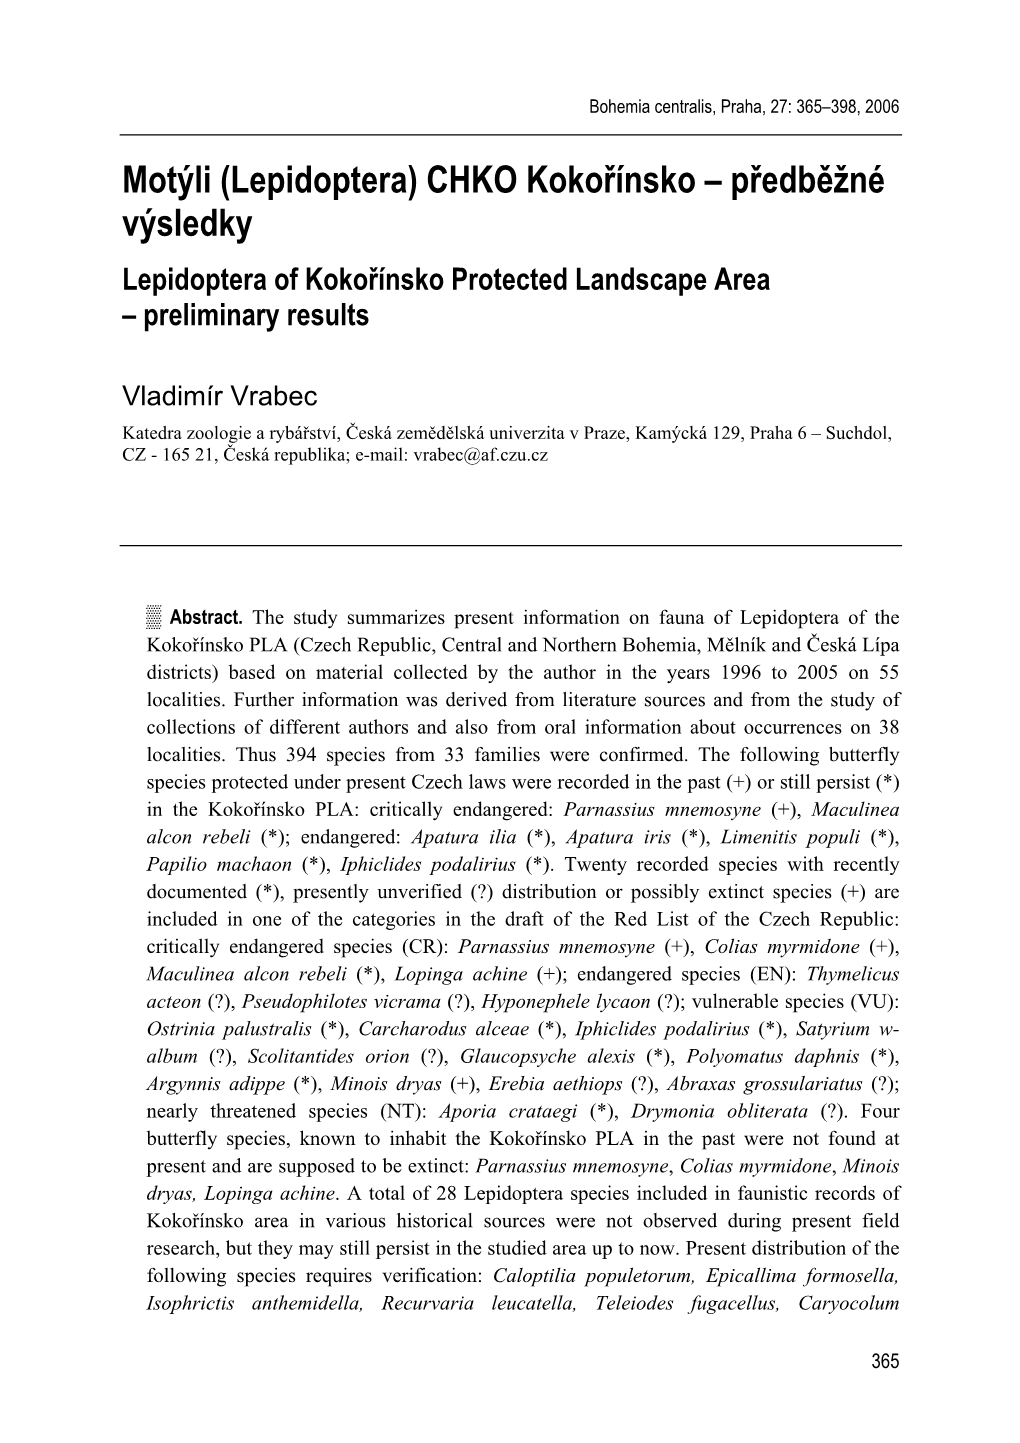 CHKO Kokořínsko – Předběžné Výsledky Lepidoptera of Kokořínsko Protected Landscape Area – Preliminary Results